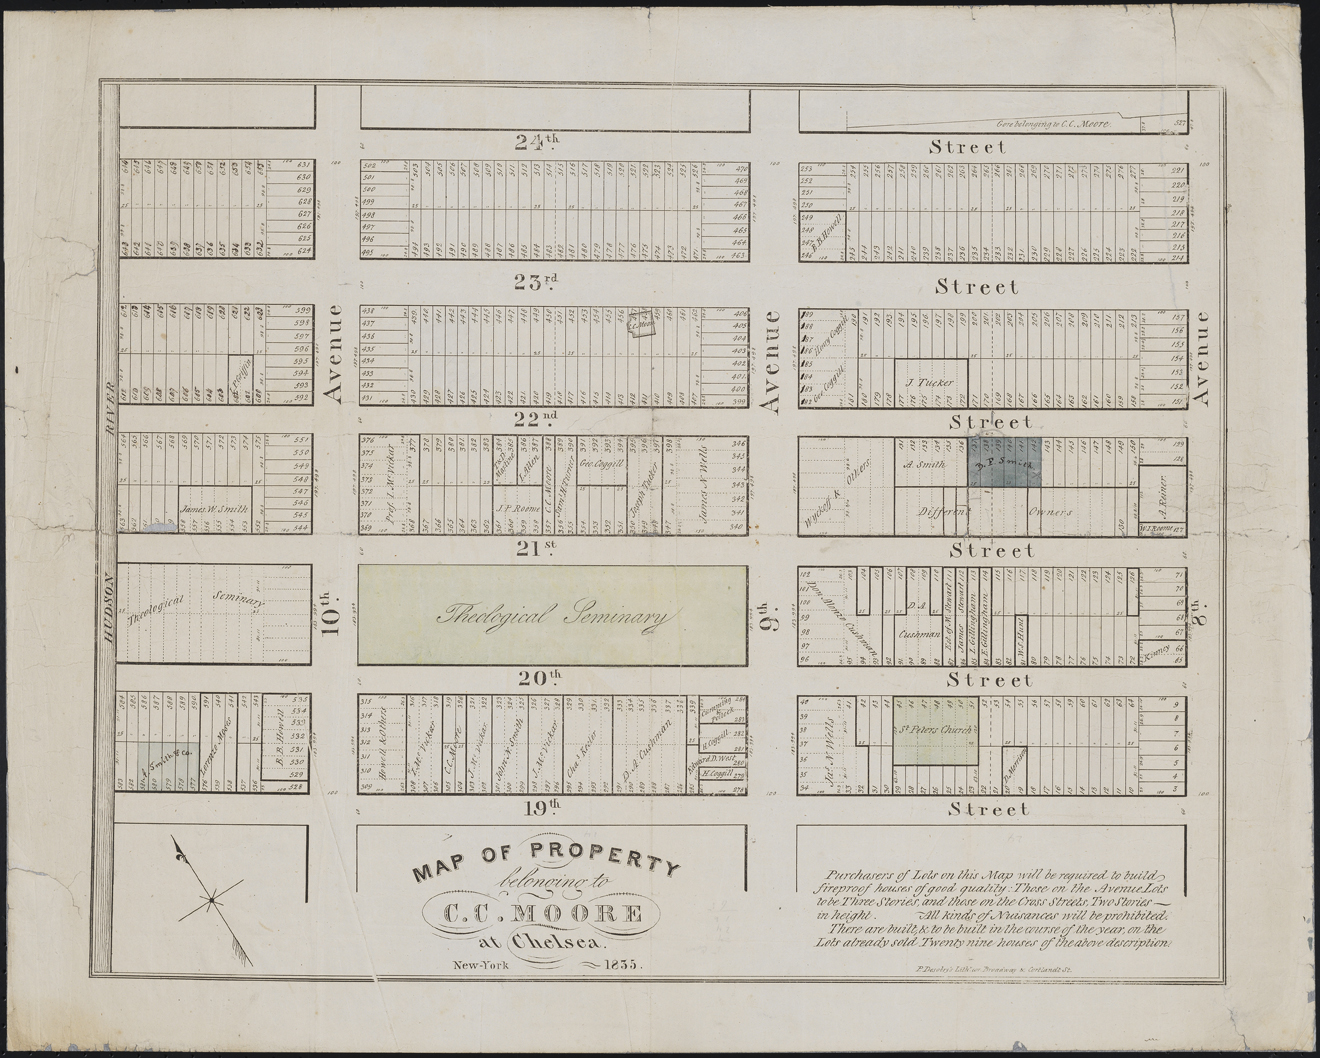 번영 Desobry. 첼시의 CC Moore에 속한 부동산의지도. 1835. 뉴욕시 박물관. 47.294.2